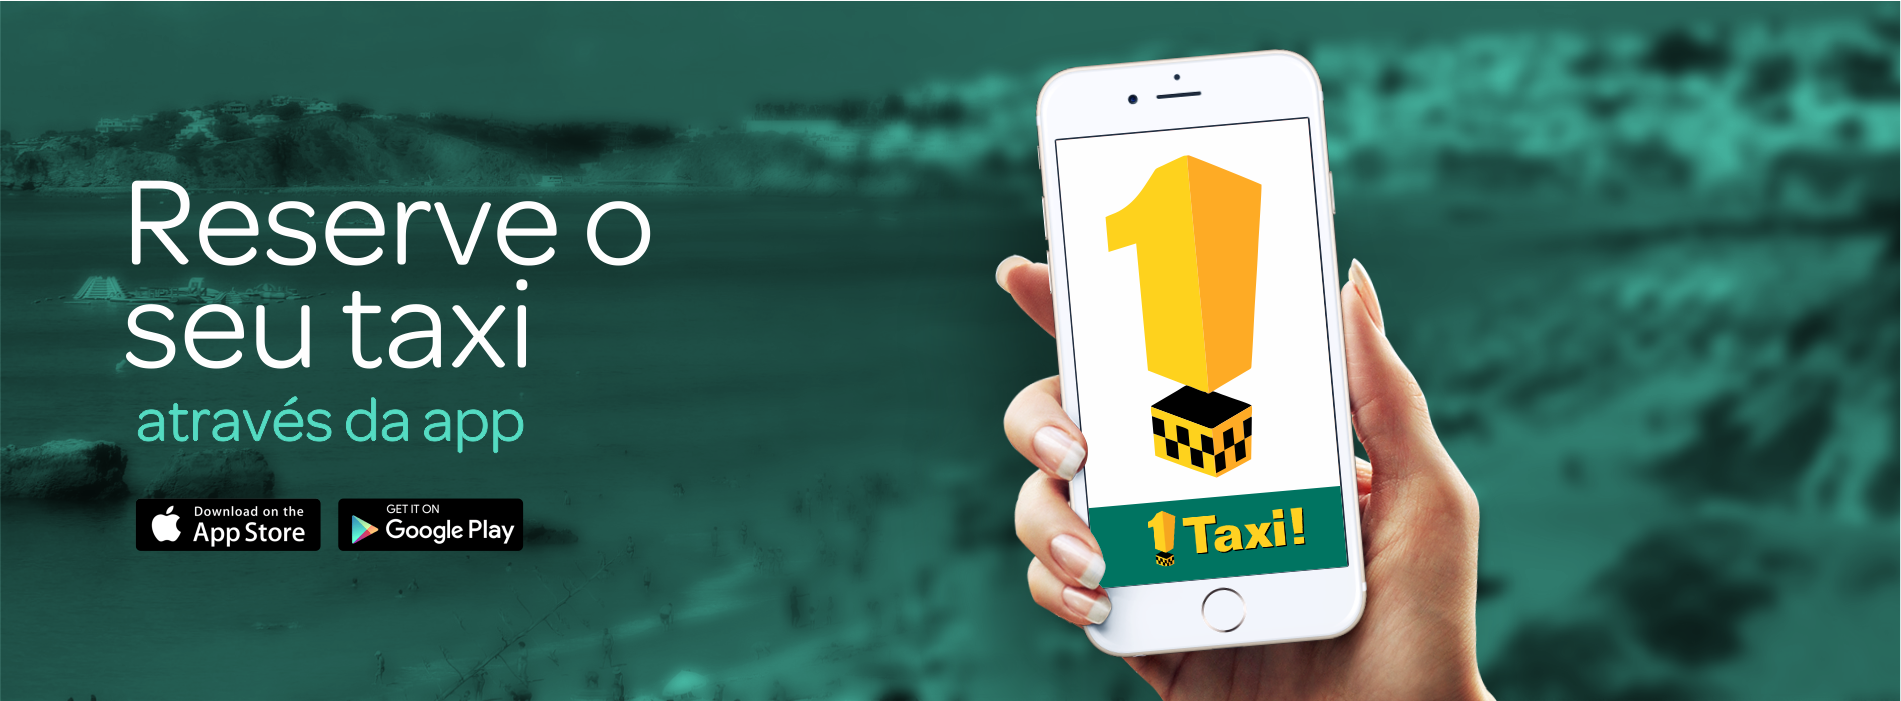 Descarregue a app da Taxis Albufeira